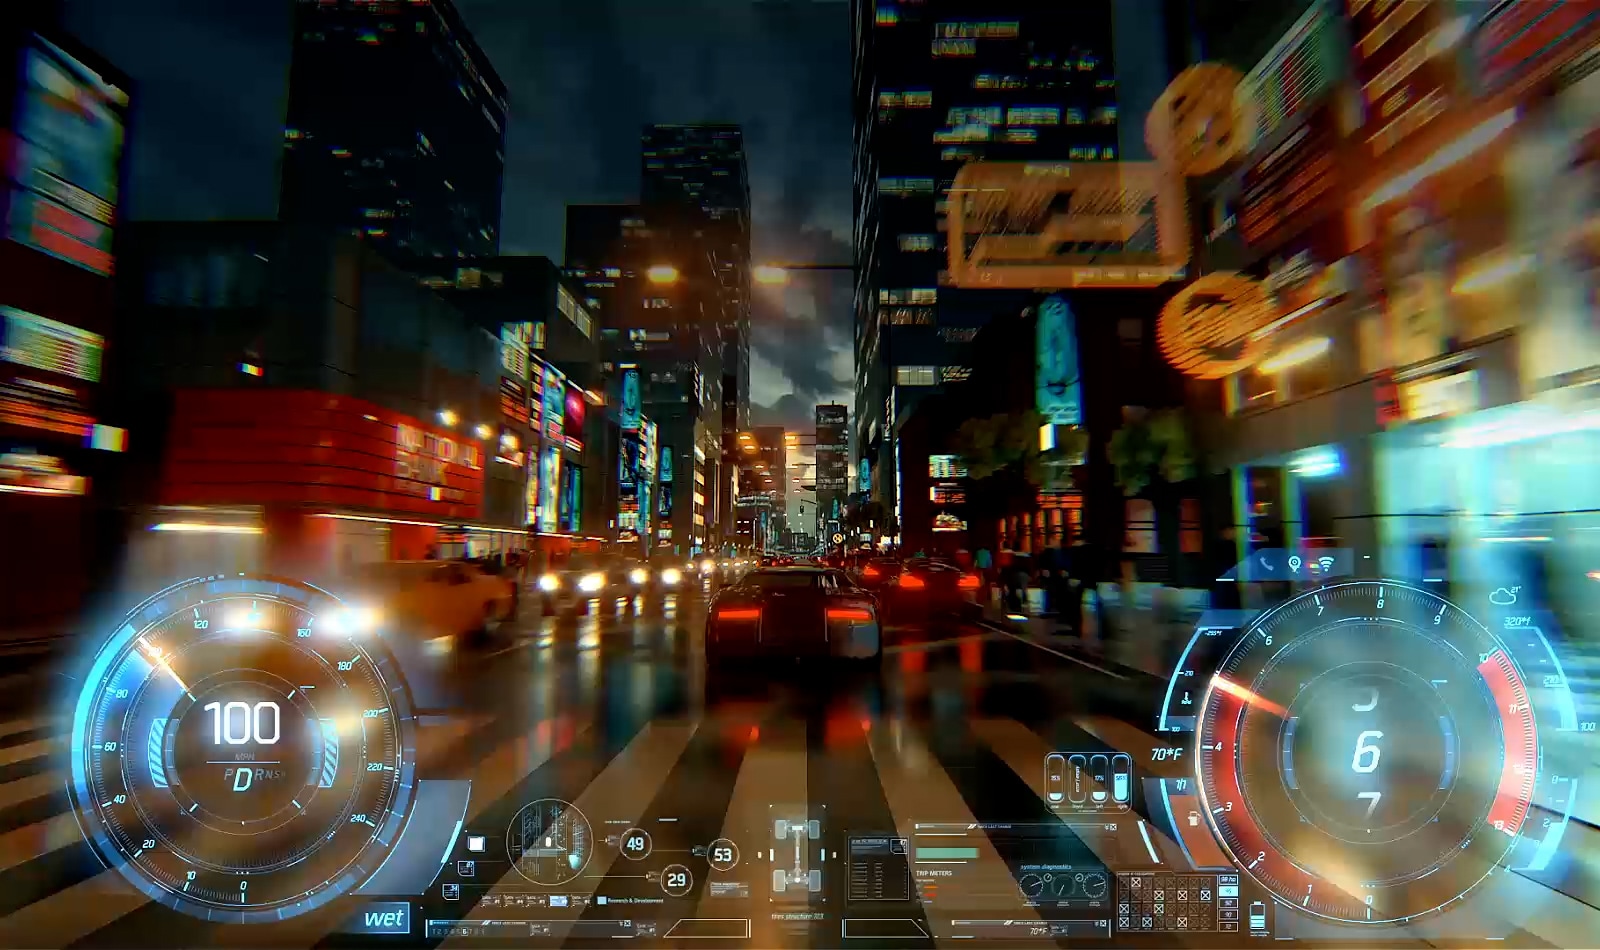 فيديو يتابع سيارة من الخلف في لعبة فيديو وهي تتحرك عبر شارع بأضواء براقة في المدينة وقت الغسق. 